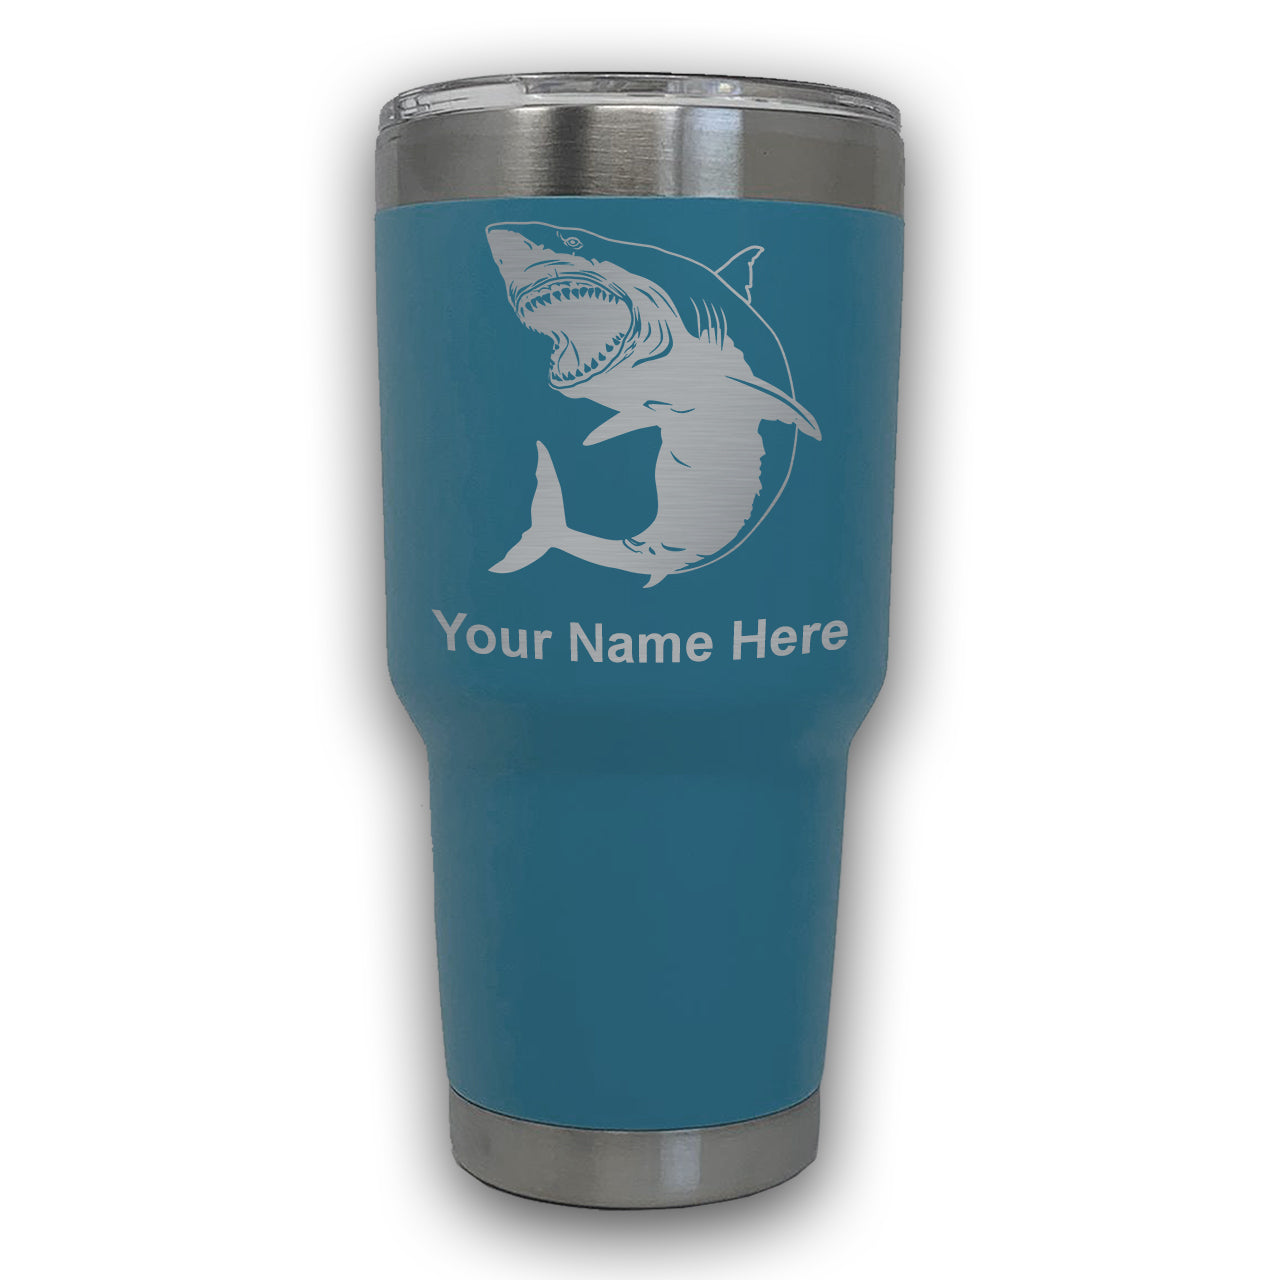 LaserGram 30oz Tumbler Mug, Great White Shark, Personalized Engraving Included